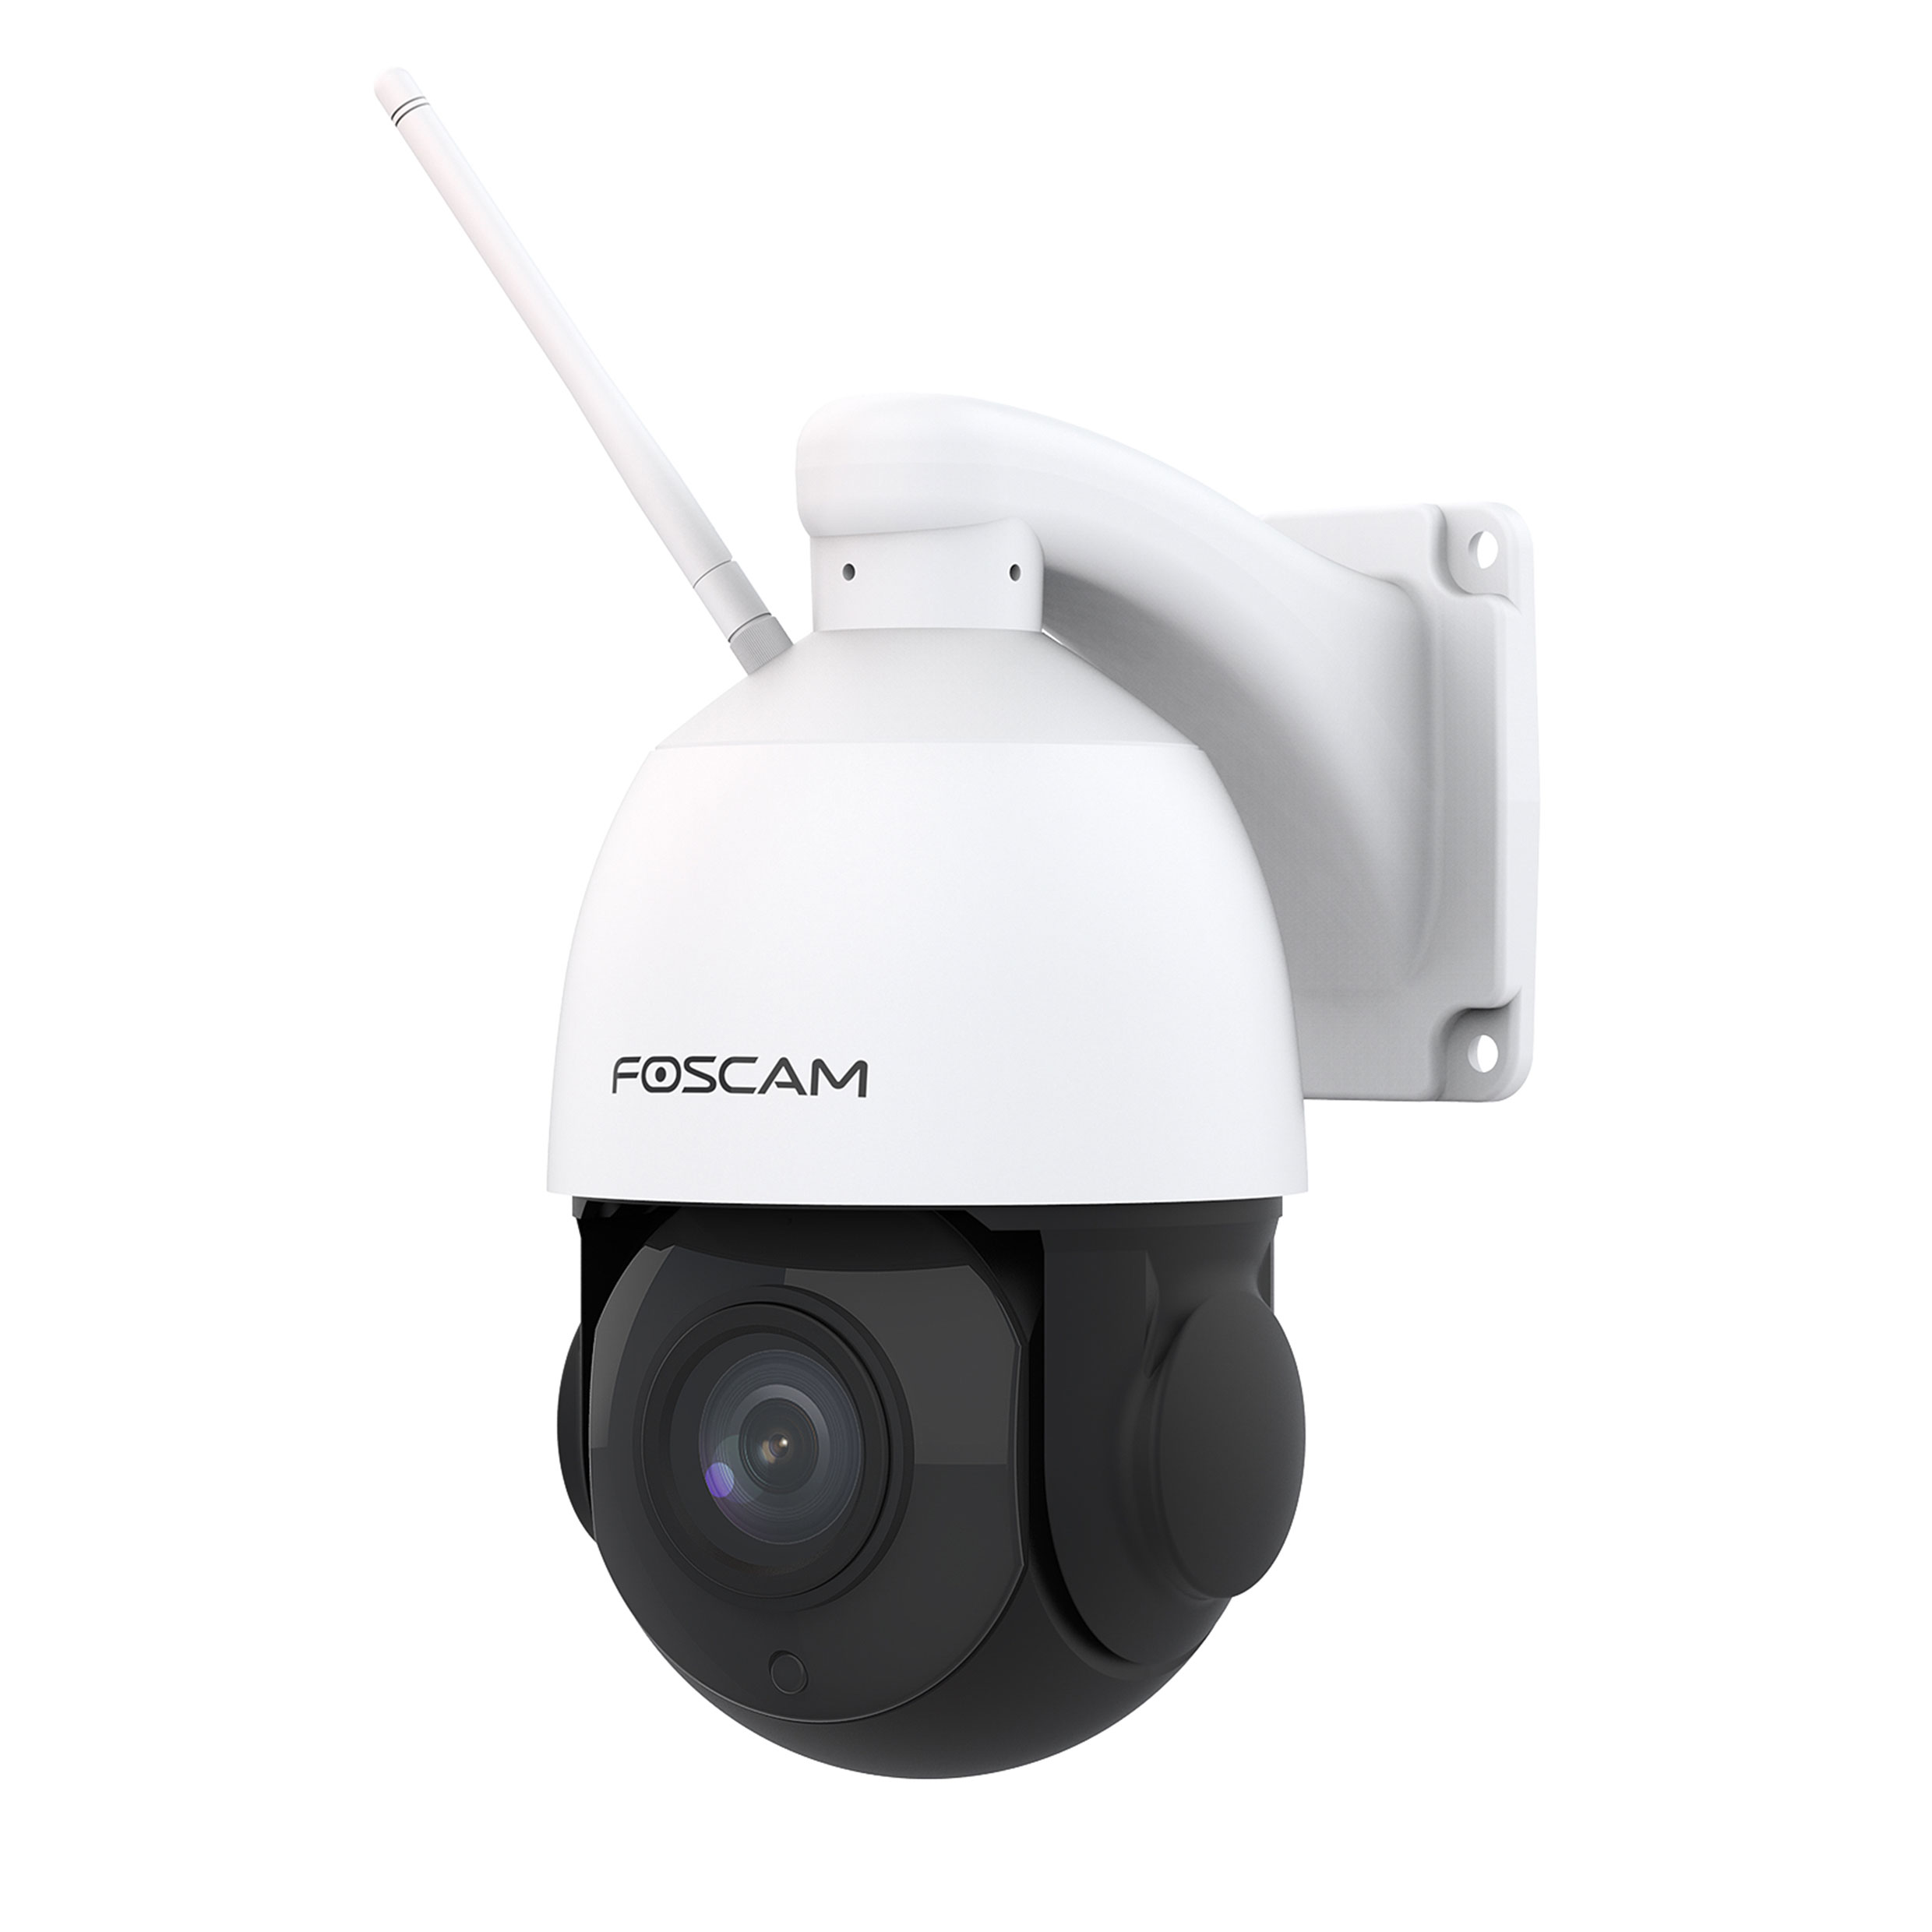 FOSCAM SD2X, x 1920 Überwachungskamera, 1080 Video: pixels Auflösung